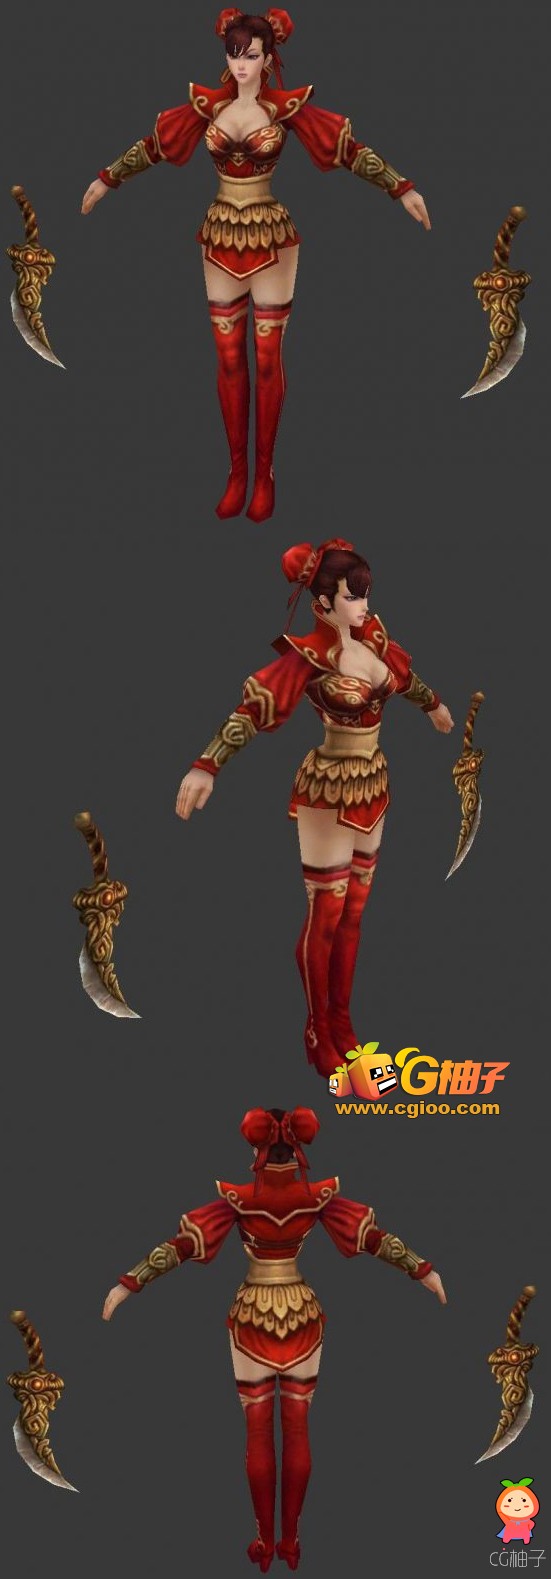 《御龙在天》美少女战士3D角色模型 古装美女3D模型手绘贴图